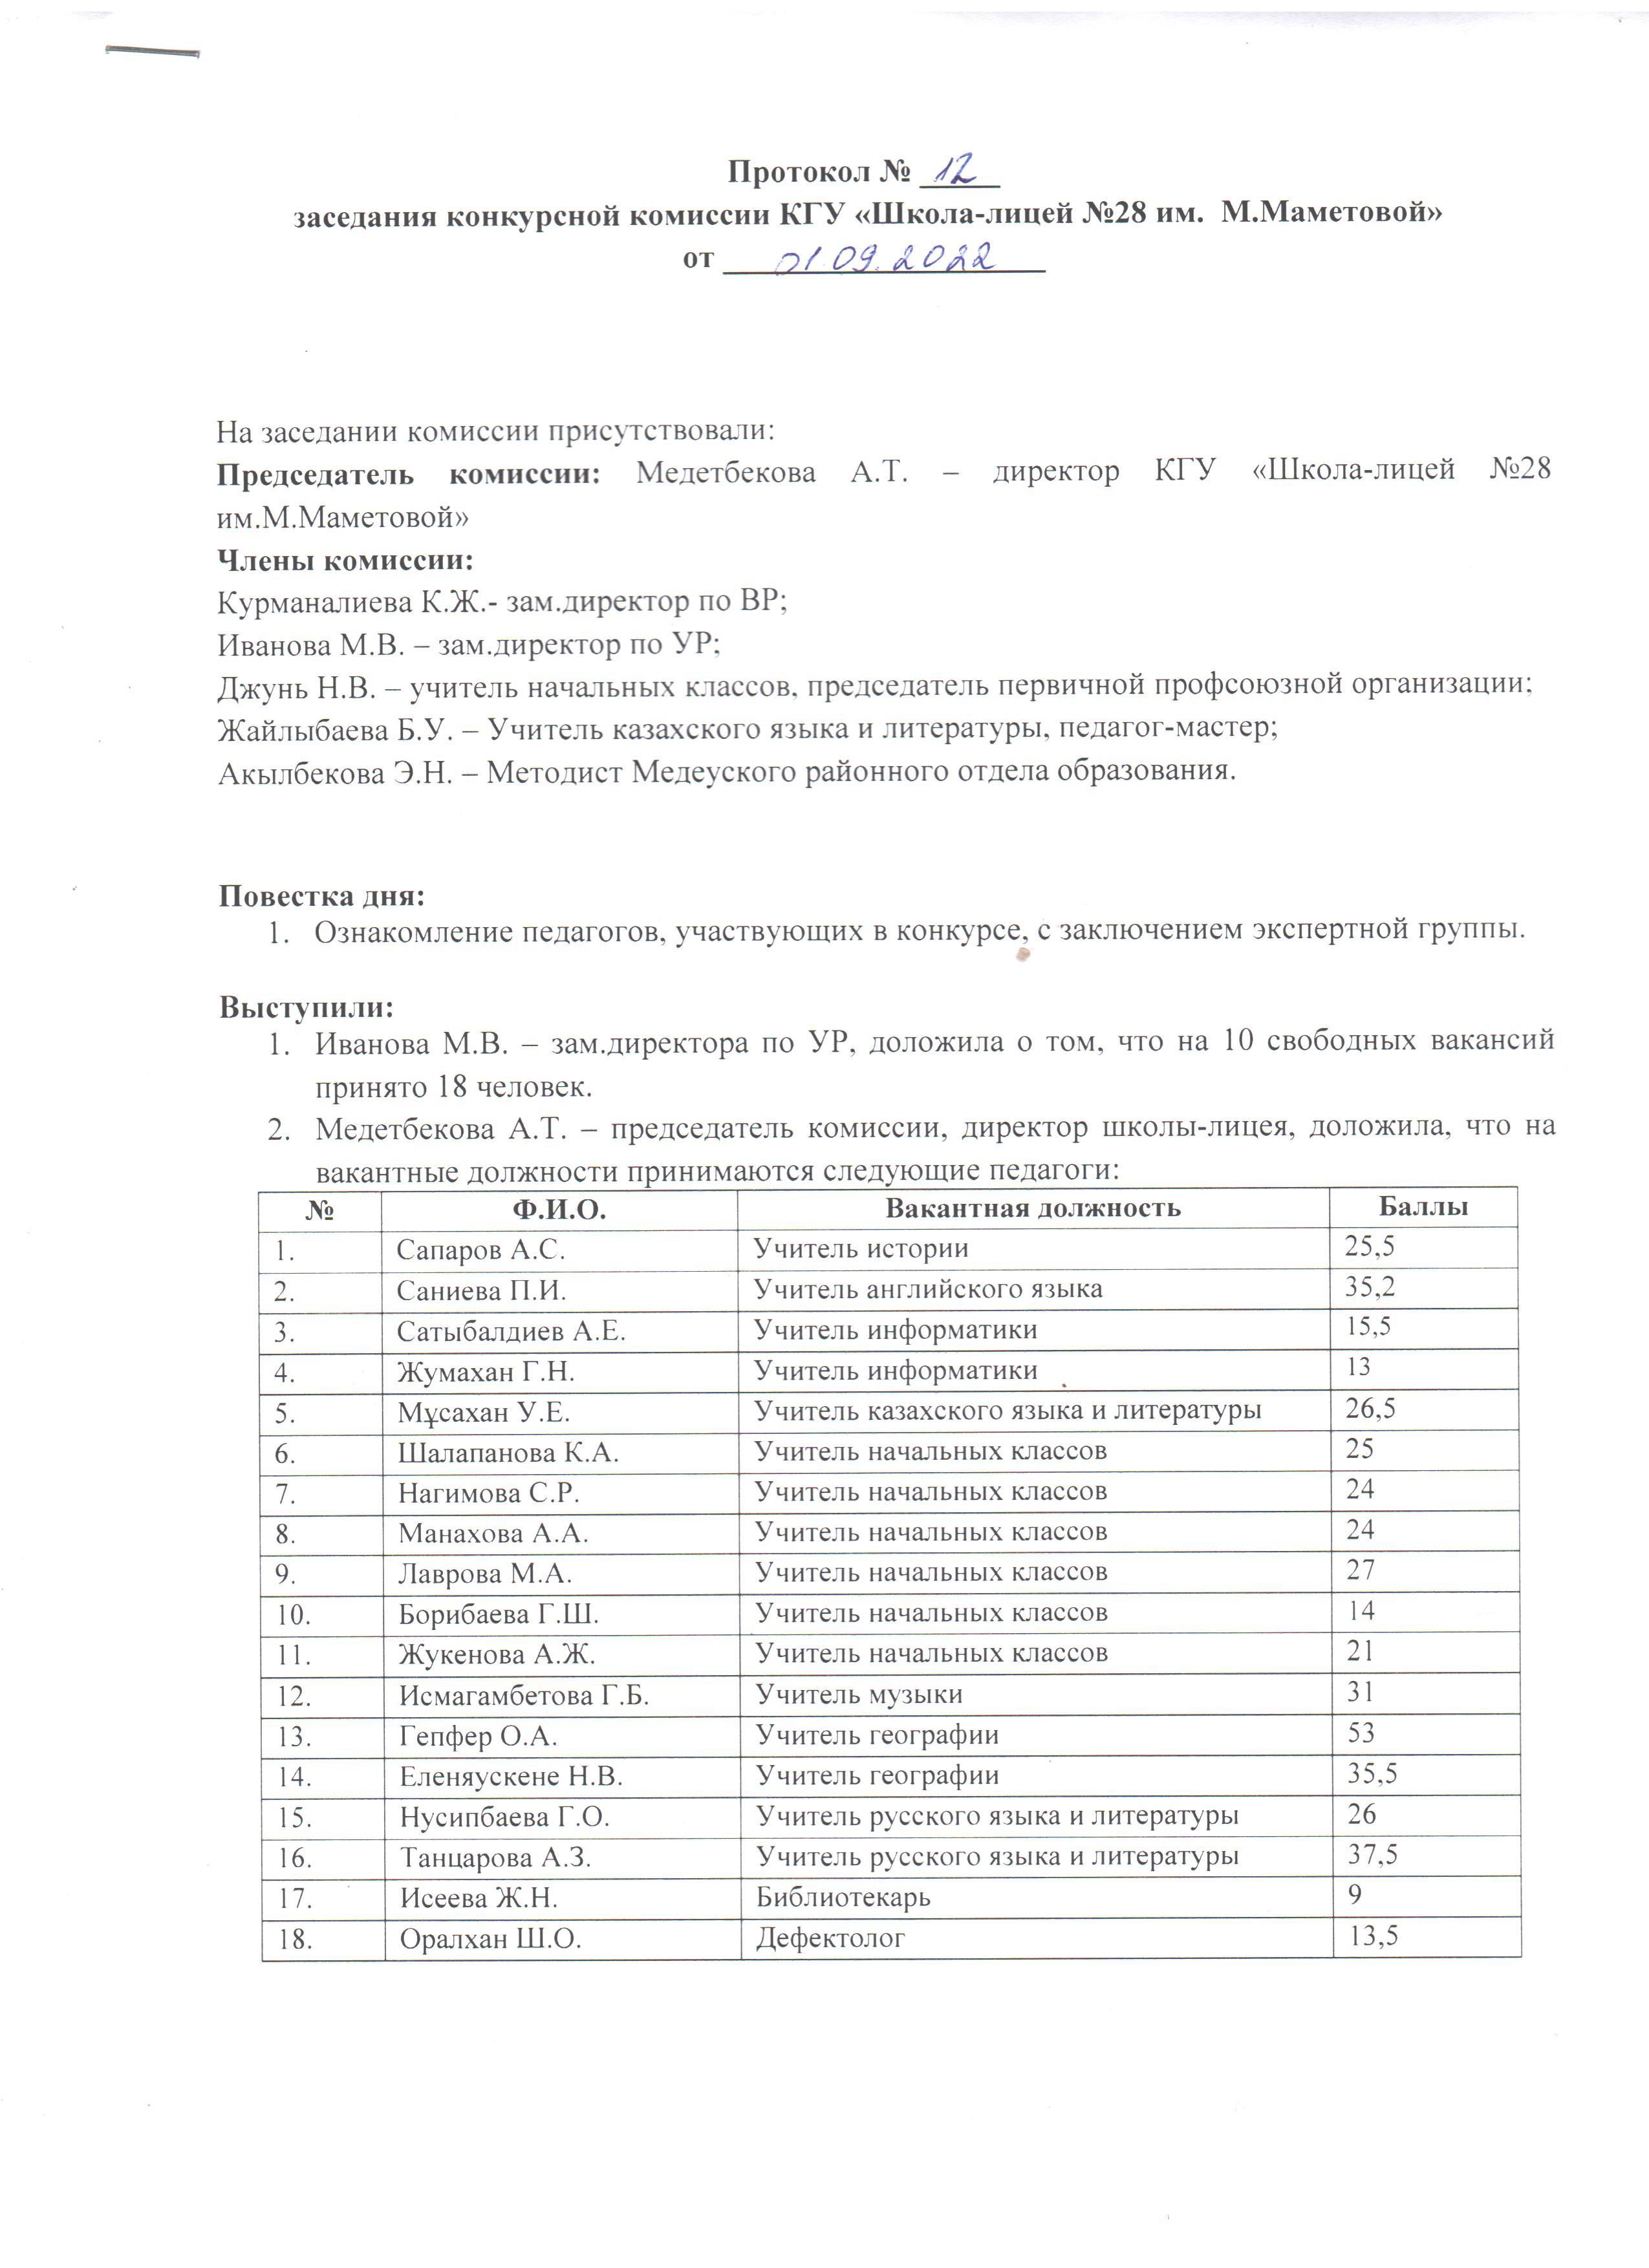 Протокол №12 "Итоги конкурса вакансий" заседания конкурсной комиссии от 1.09.2022 г.